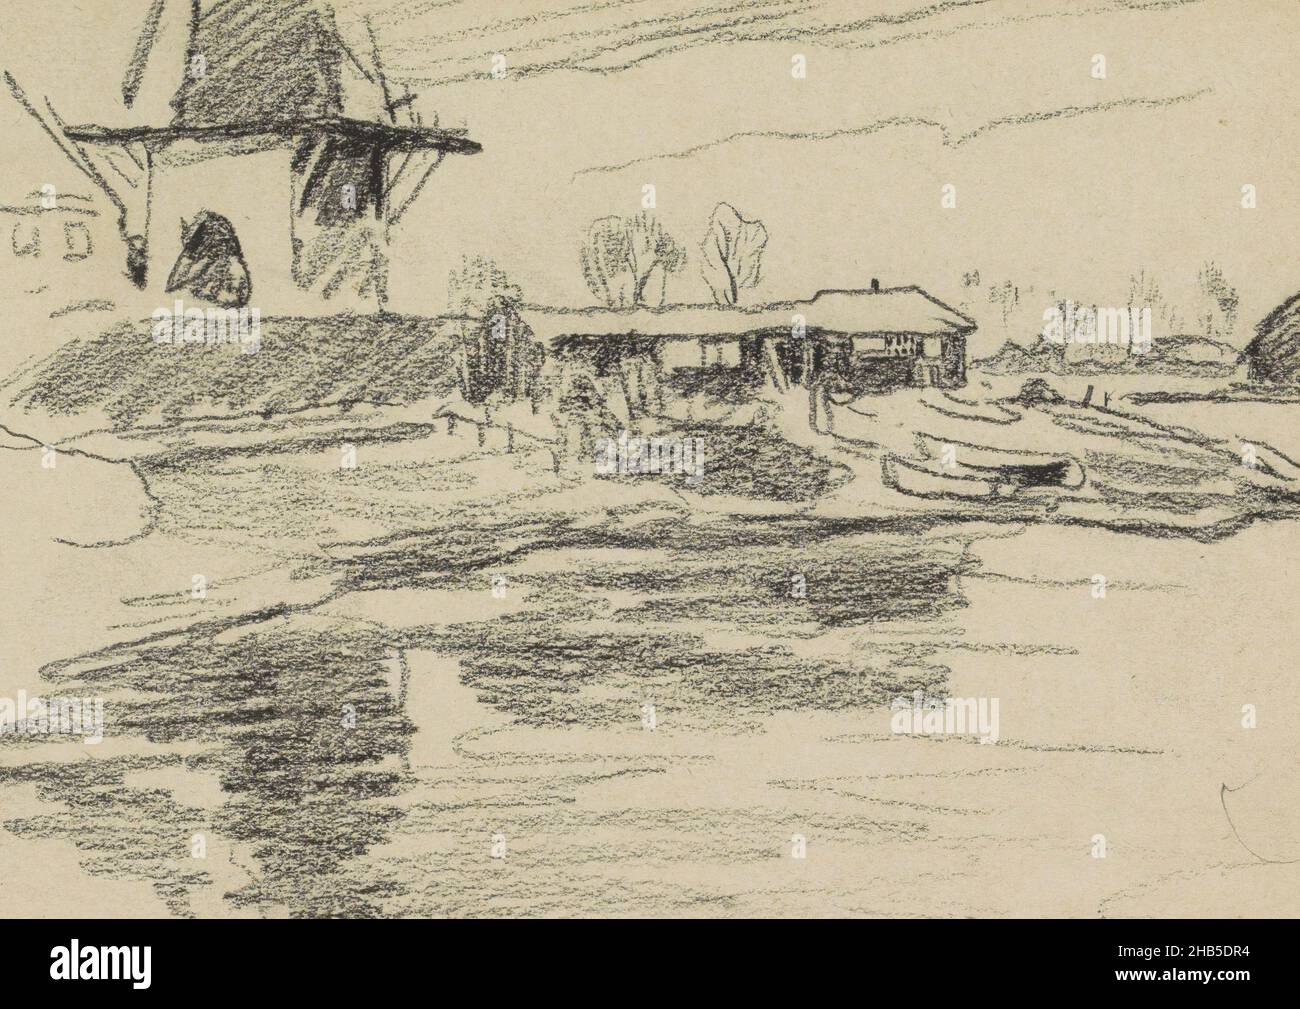 Pagina 37 da un libretto di 25 pagine, Vista del mulino a vento Rijn e Lek a Wijk bij Duurstede., disegnatore: Willem Witsen, Wijk bij Duurstede, 1906 - 1907, Willem Witsen, 1906 - 1907 Foto Stock